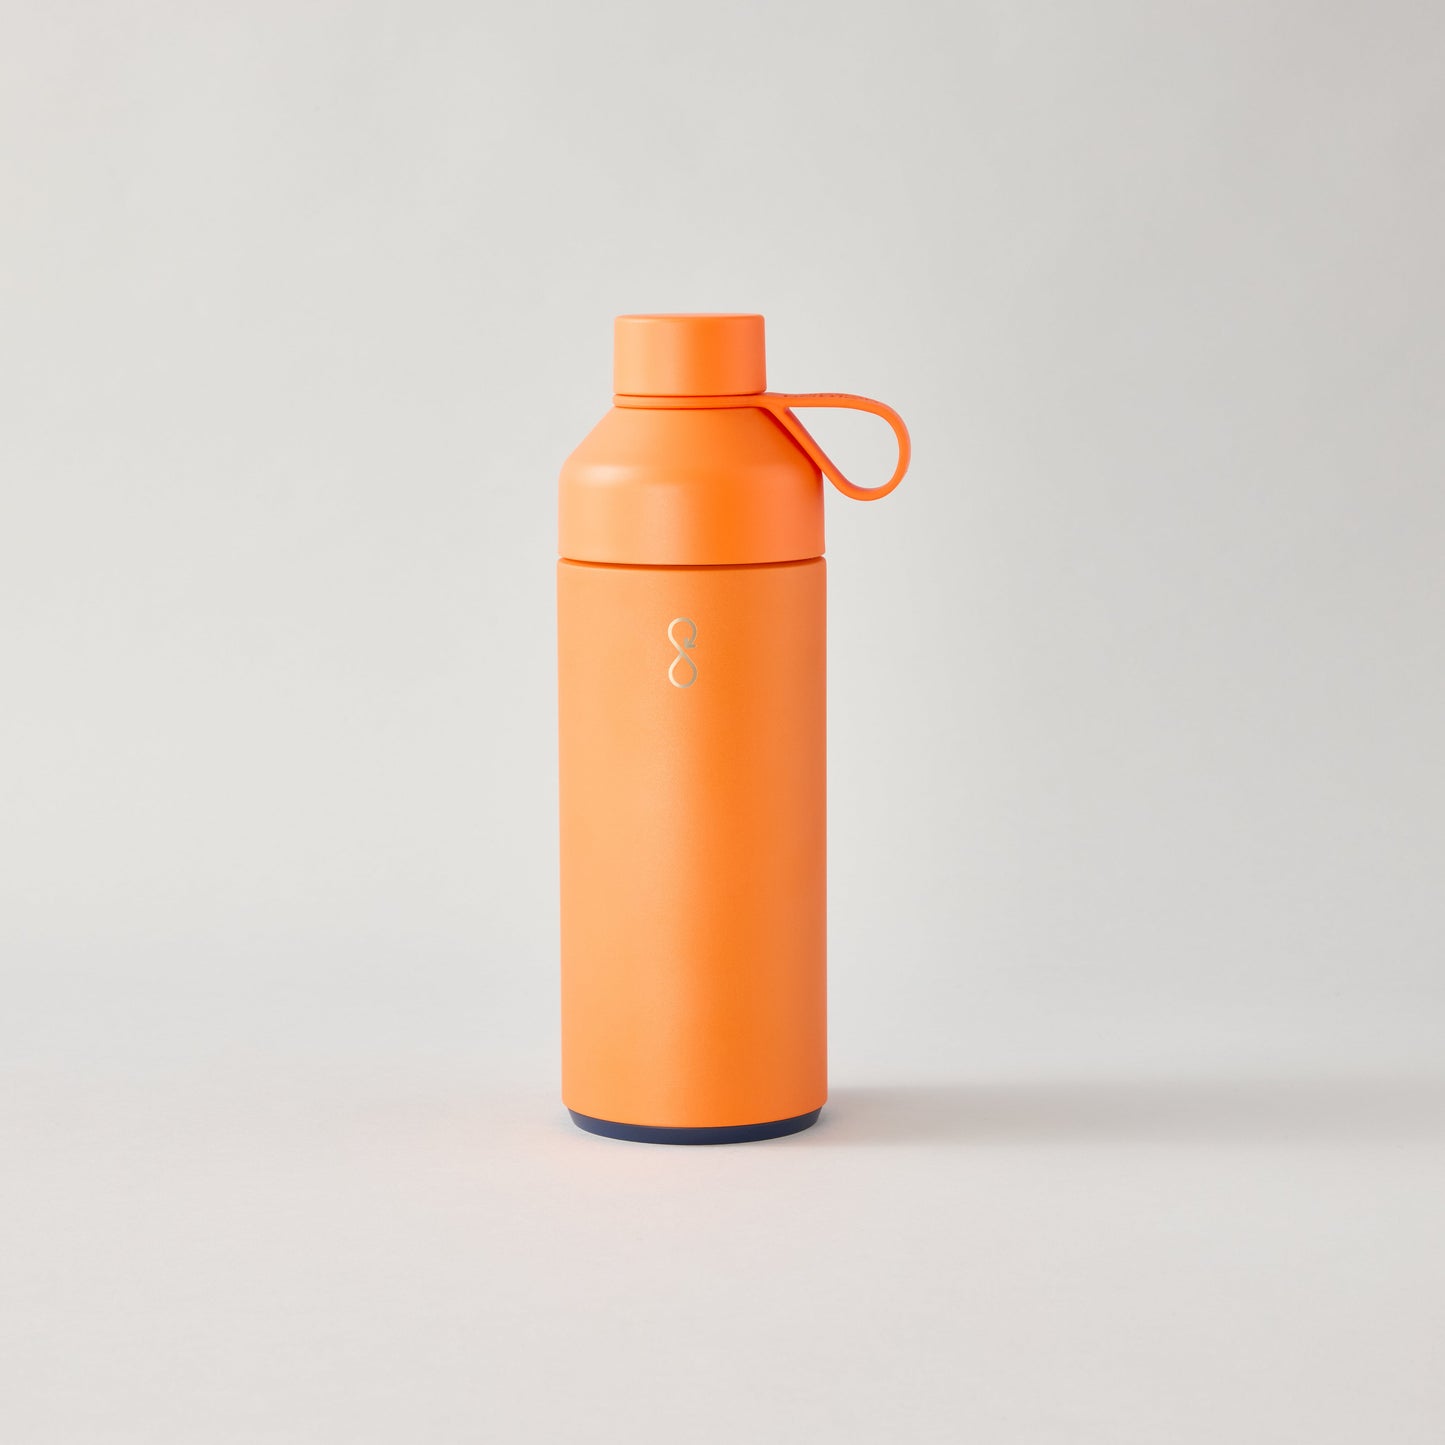 Big Ocean Bottle - Sun Orange 34oz (1L)